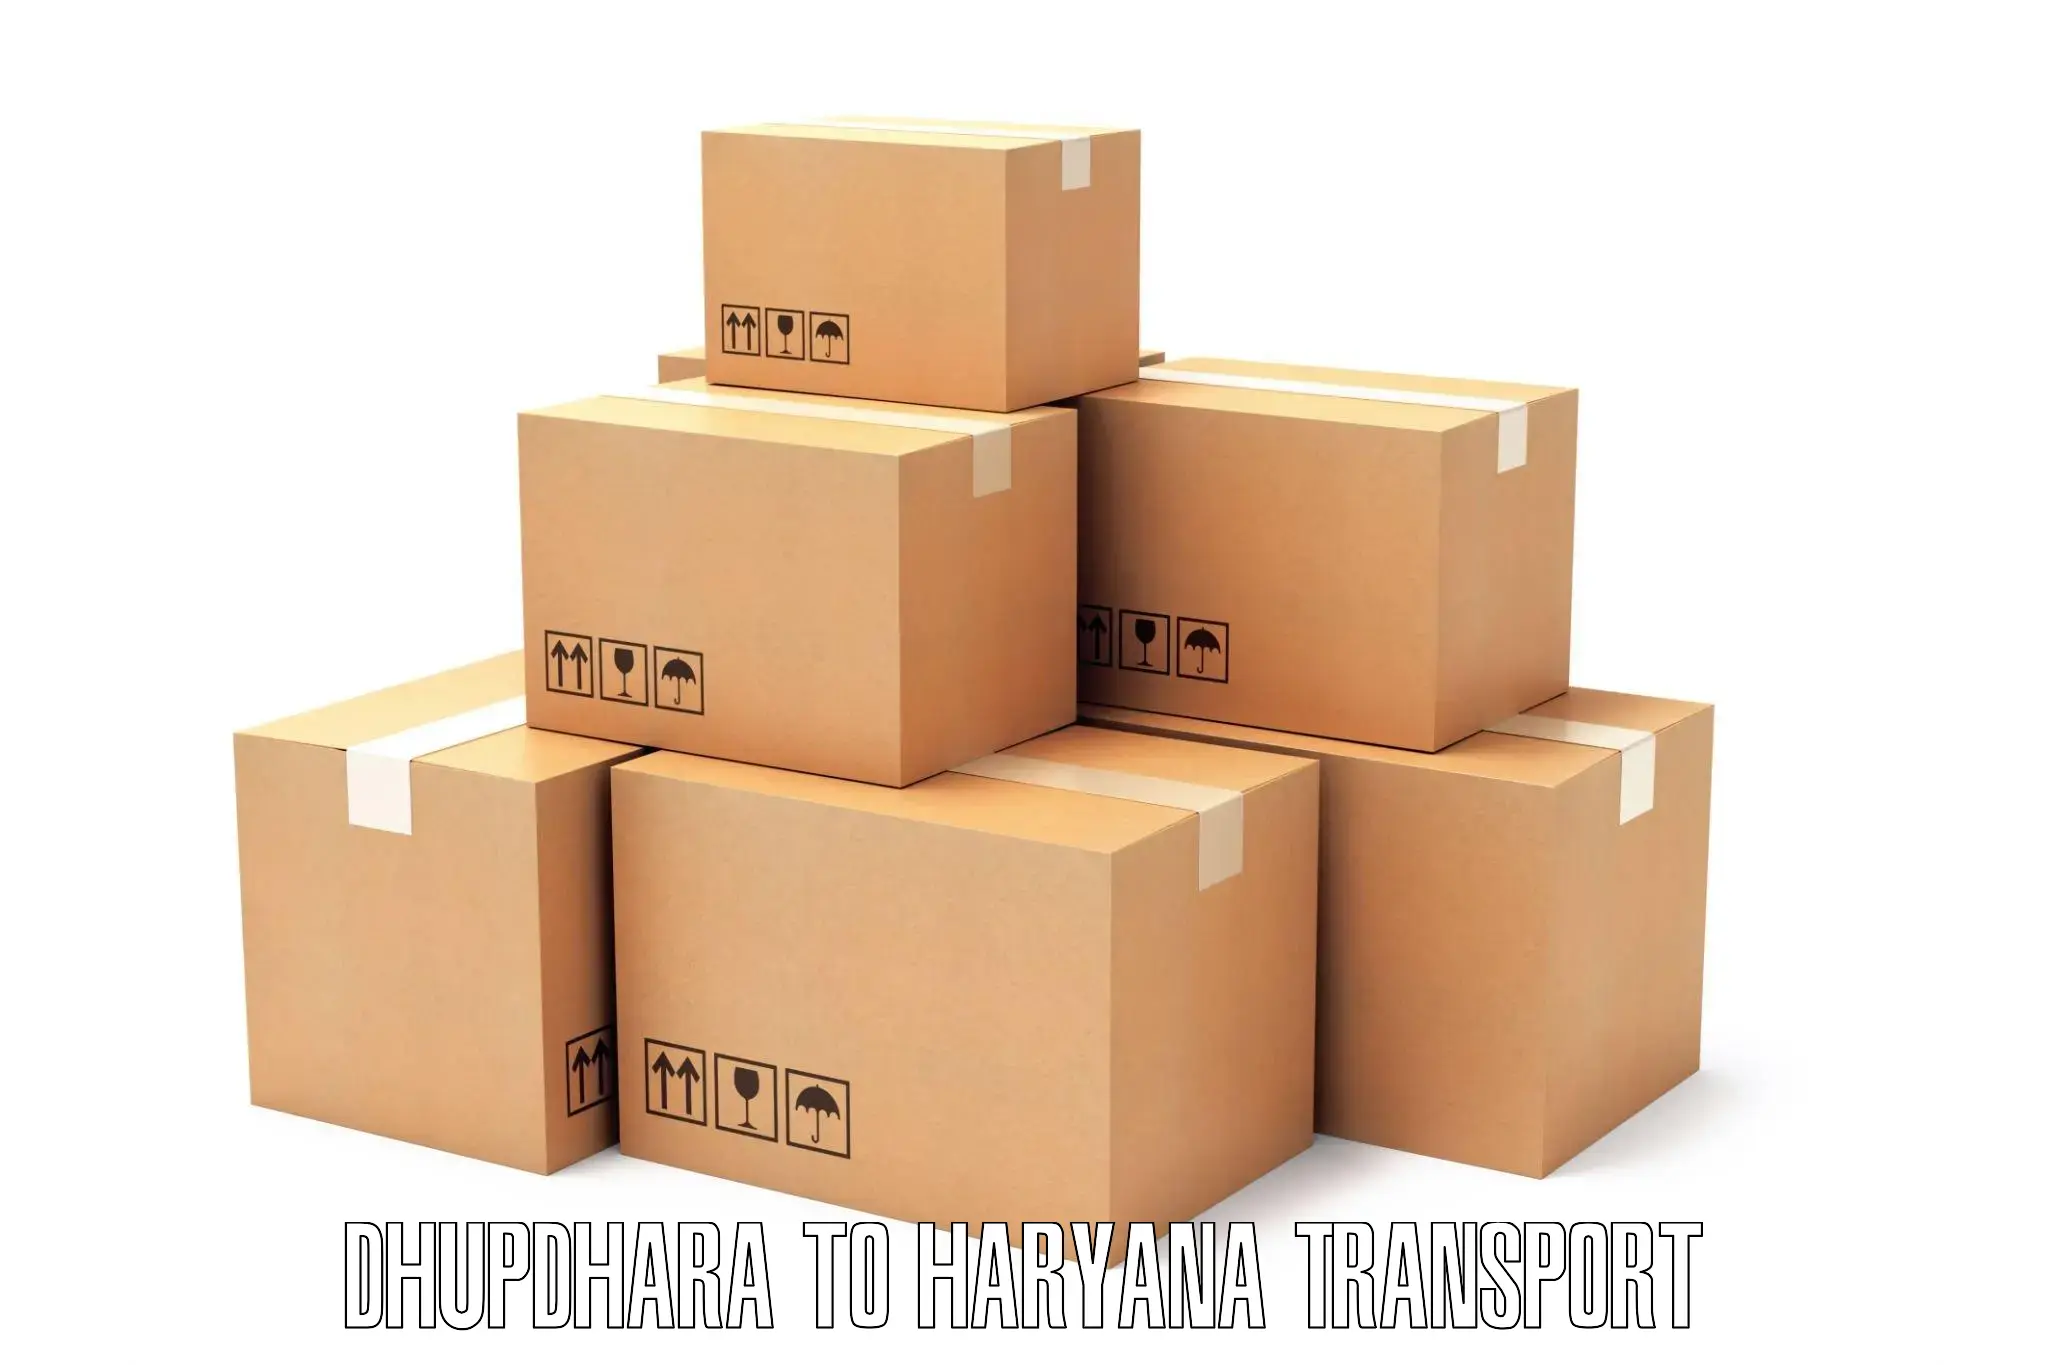 Furniture transport service Dhupdhara to Gurgaon